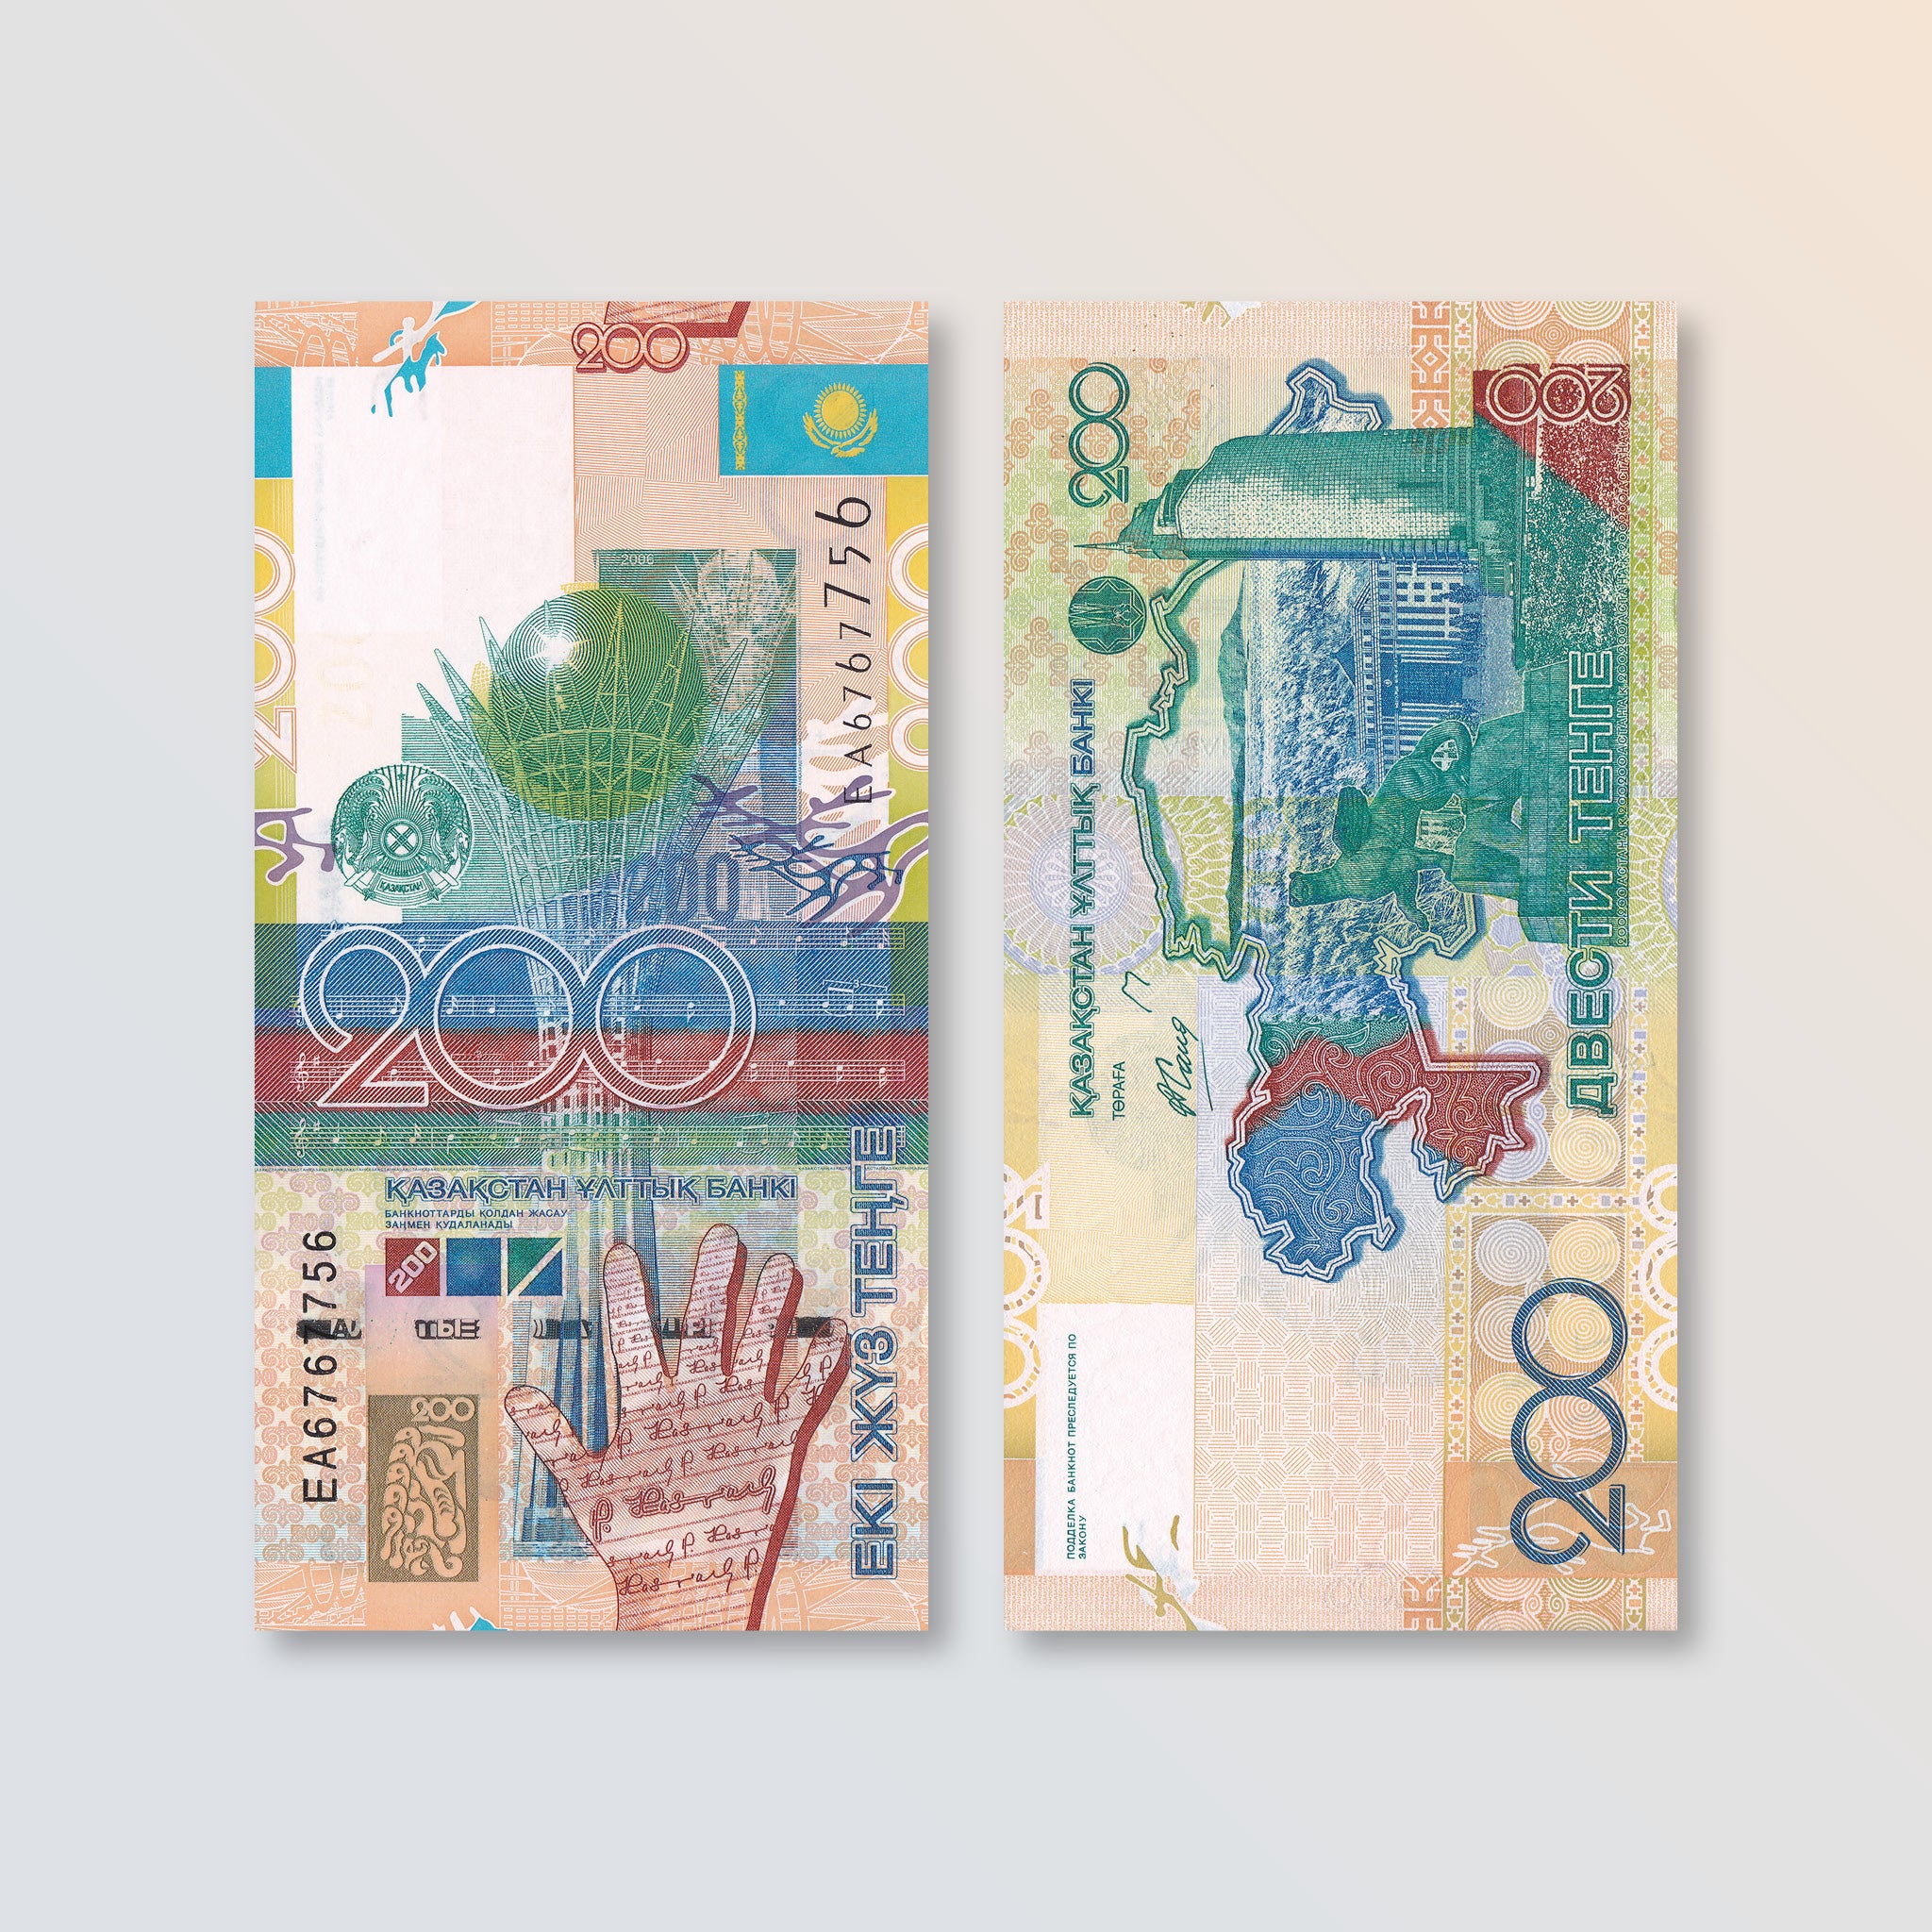 Kazakhstan 200 Tenge, 2006, B128a, P28, UNC - Robert's World Money - World Banknotes